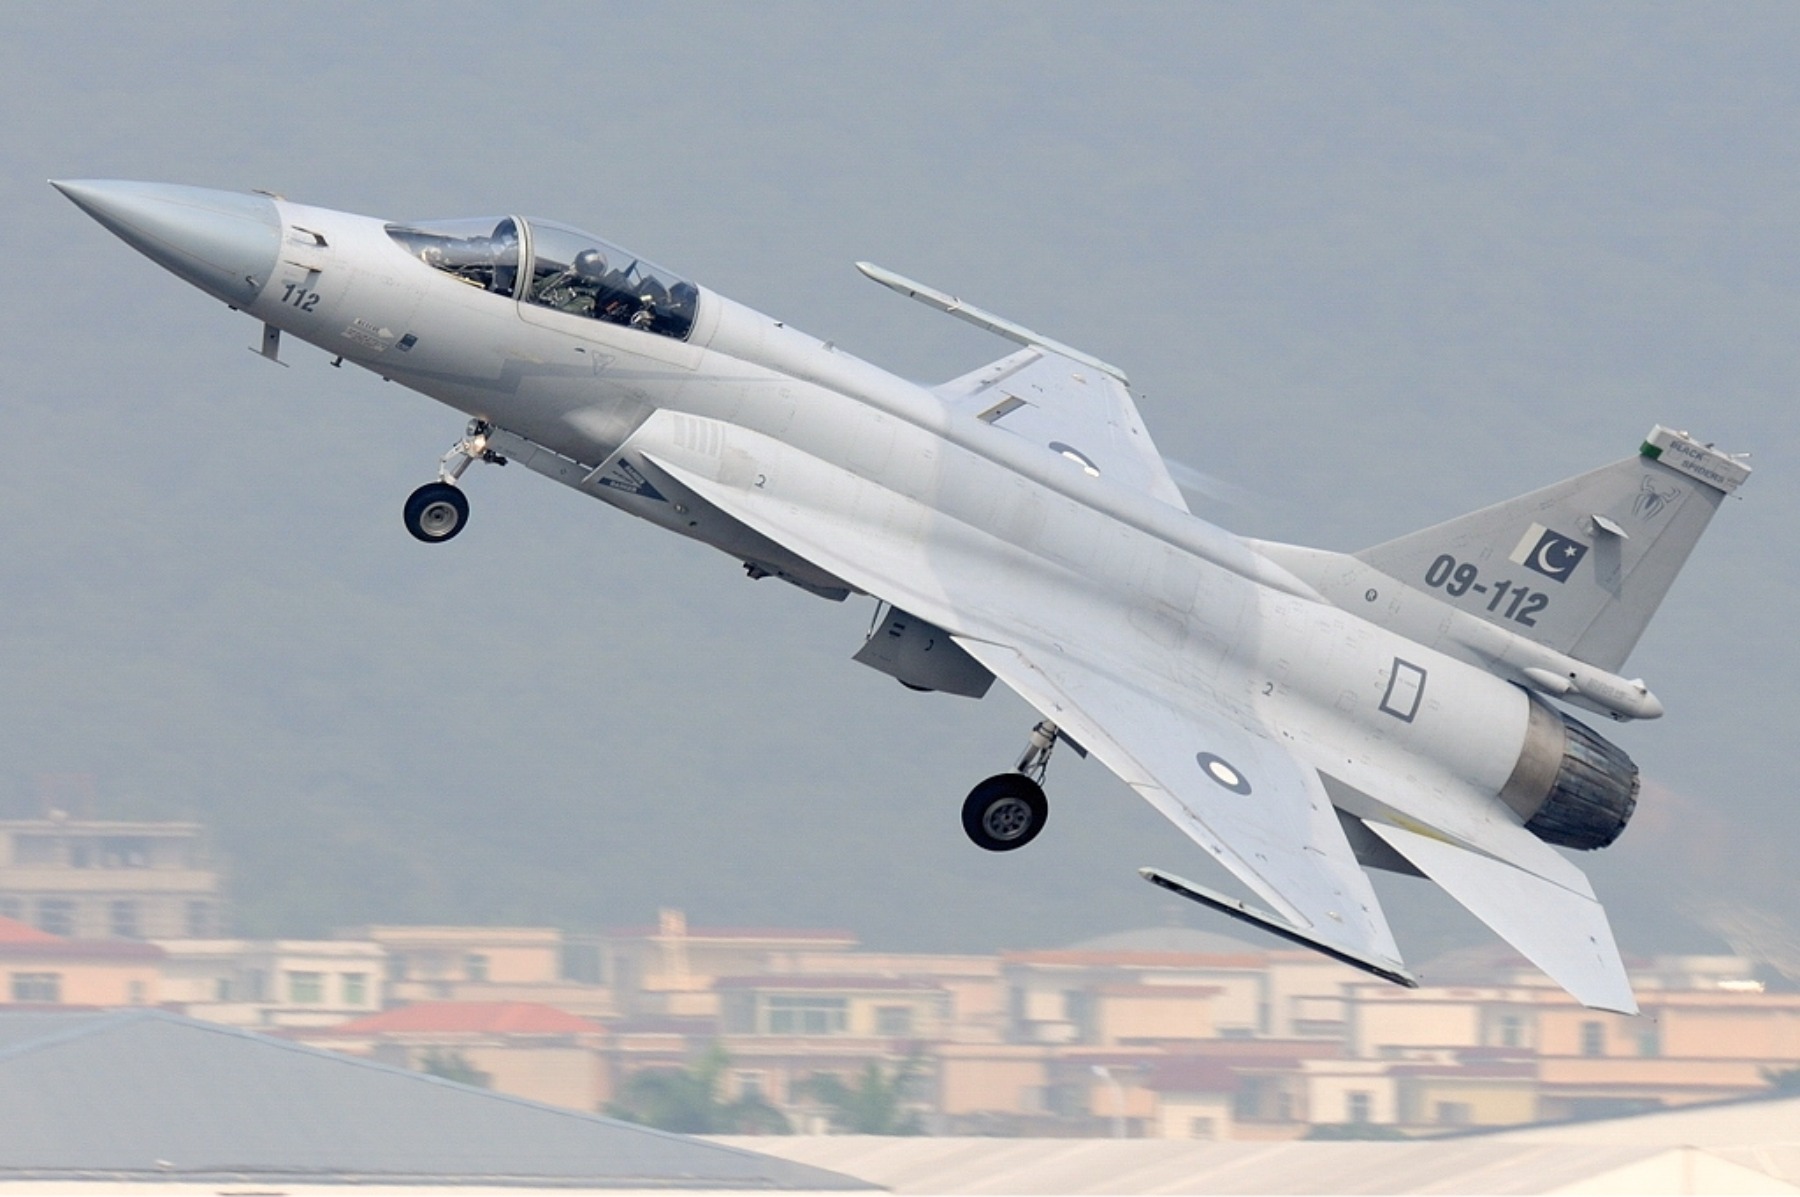 L'Argentina sta valutando l'acquisto di caccia indiani Tejas e sino-pakistani JF-16 Thunder